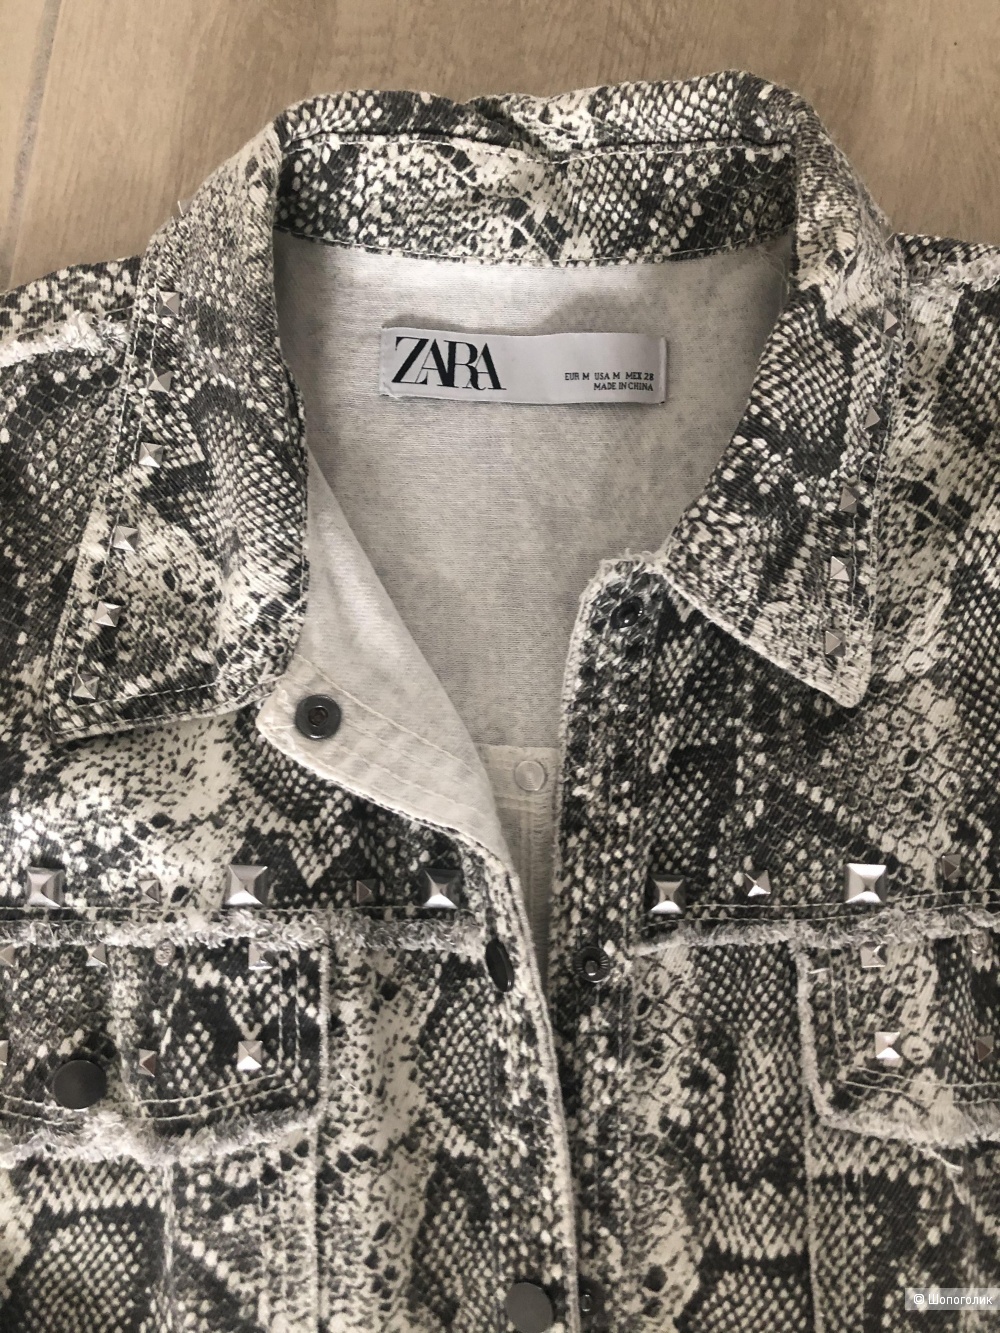 Сет из 3 вещей. Юбка Zara, куртка Zara, брюки Massimo dutti. Размер S-M.